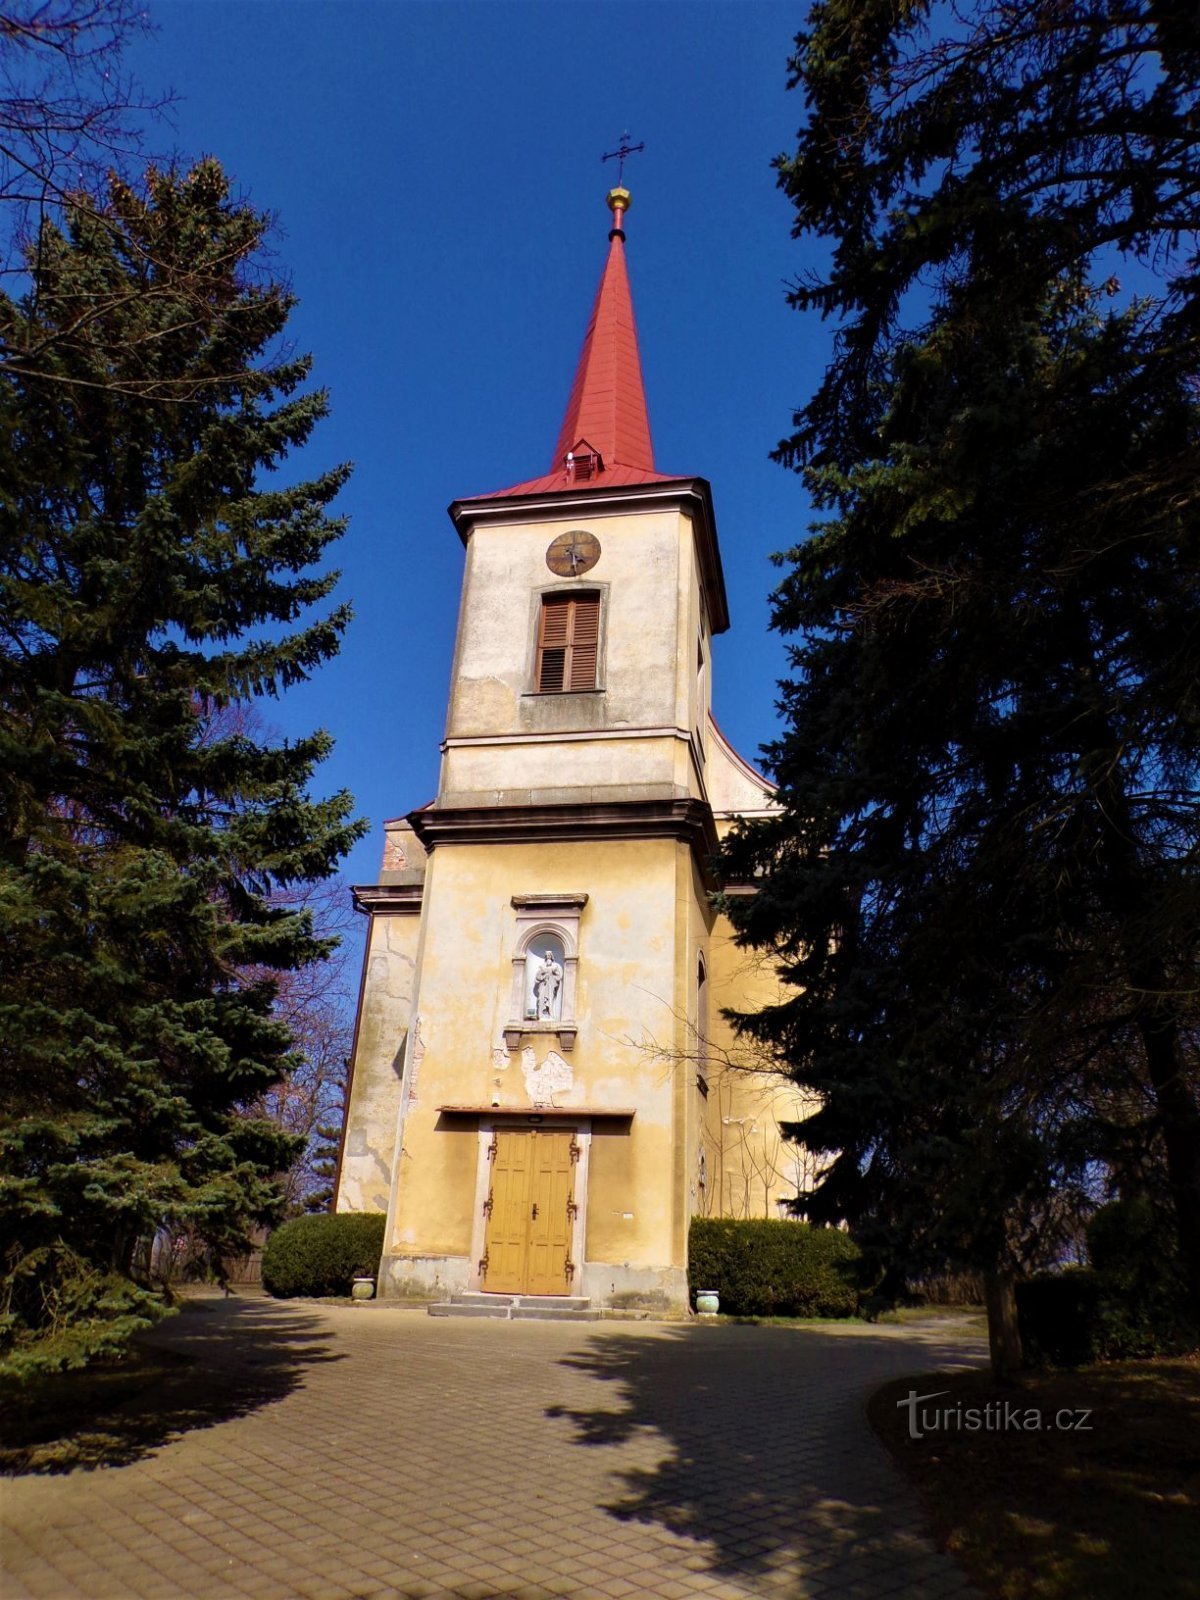 Kirche St. Štěpán (Černilov, 25.3.2021. Juli XNUMX)